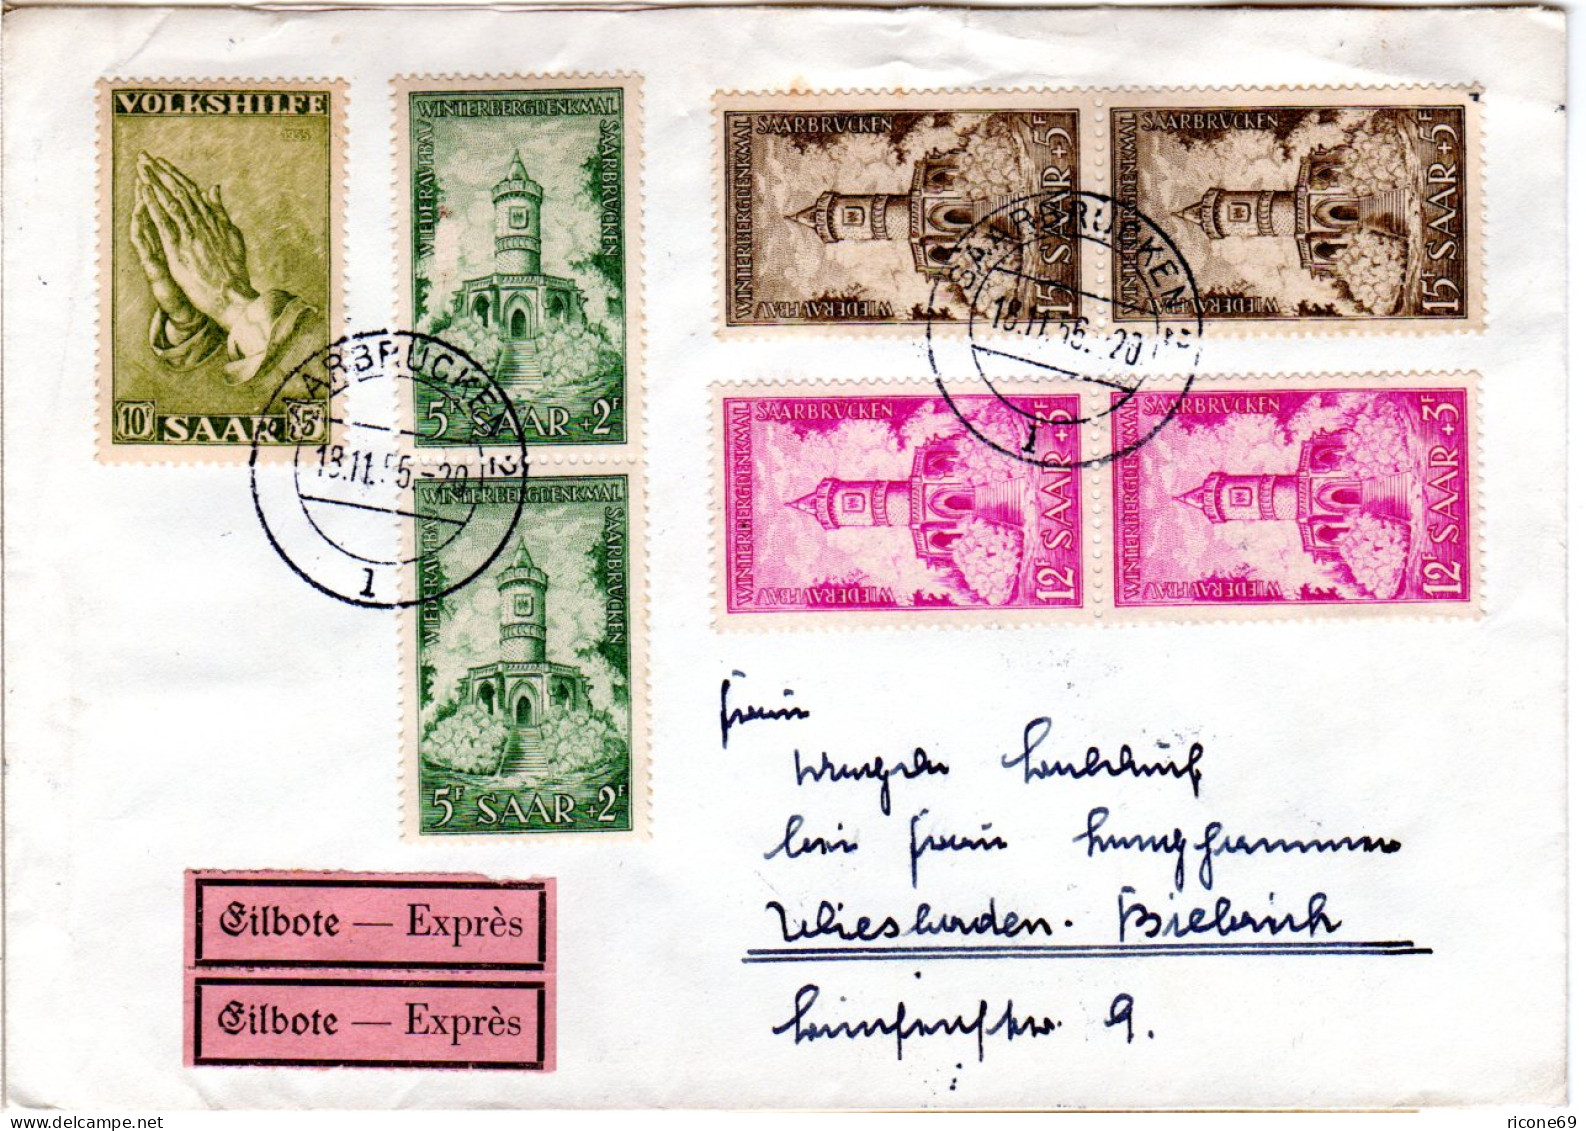 Saarland 1956, 7 Zuschlagmarken Auf Eilboten Brief V. Saarbrücken N. Wiesbaden. - Storia Postale